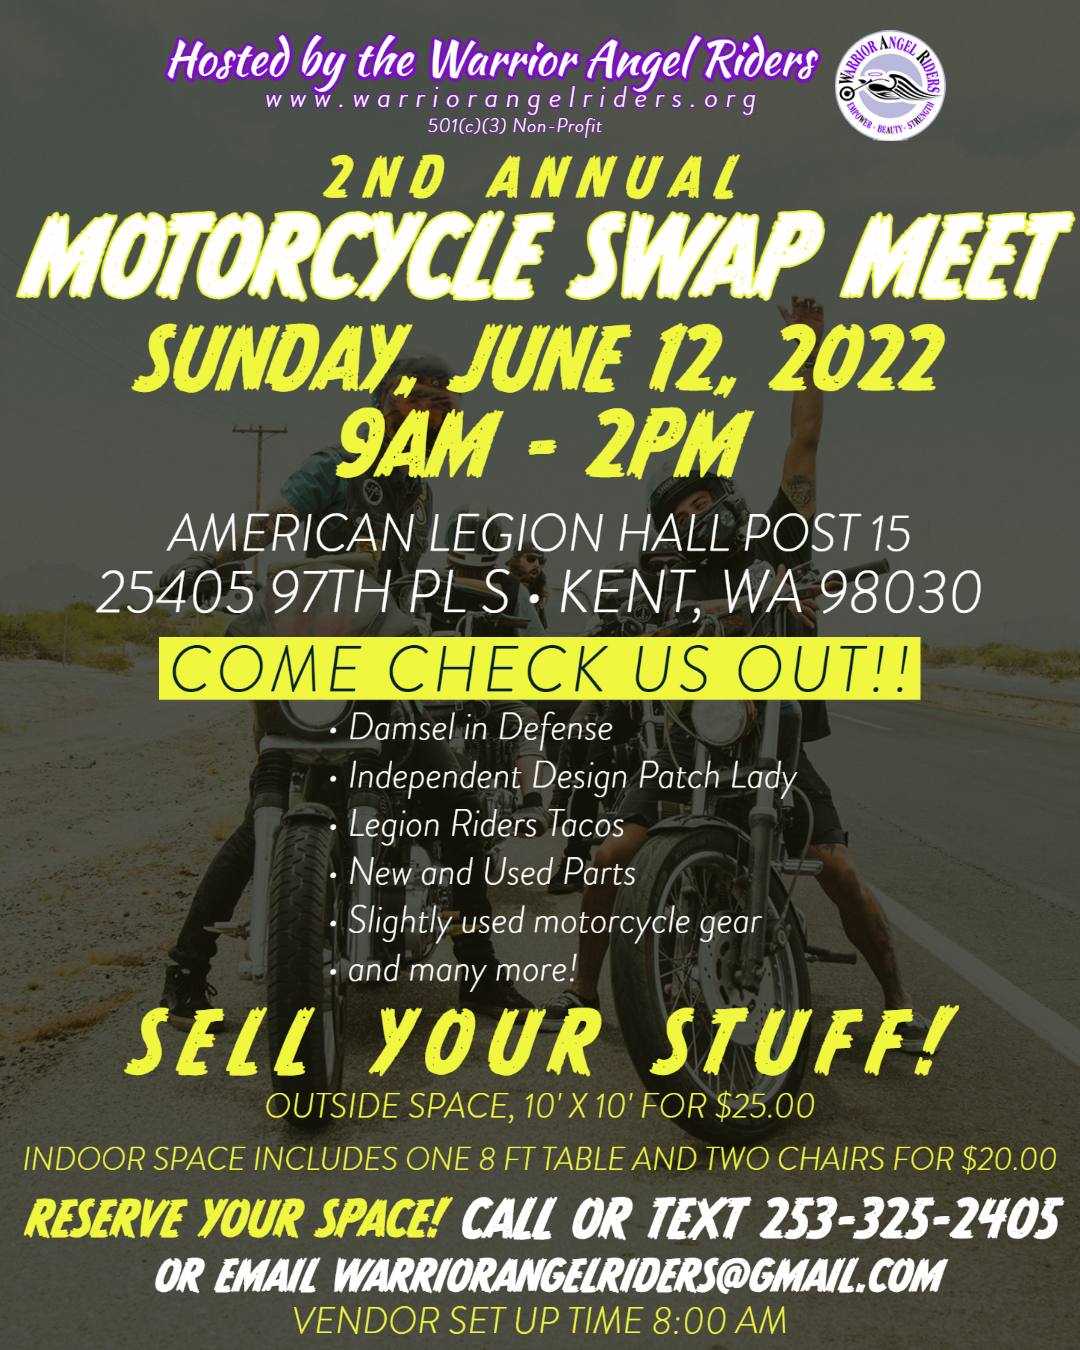 Motorcycle Swap Meet